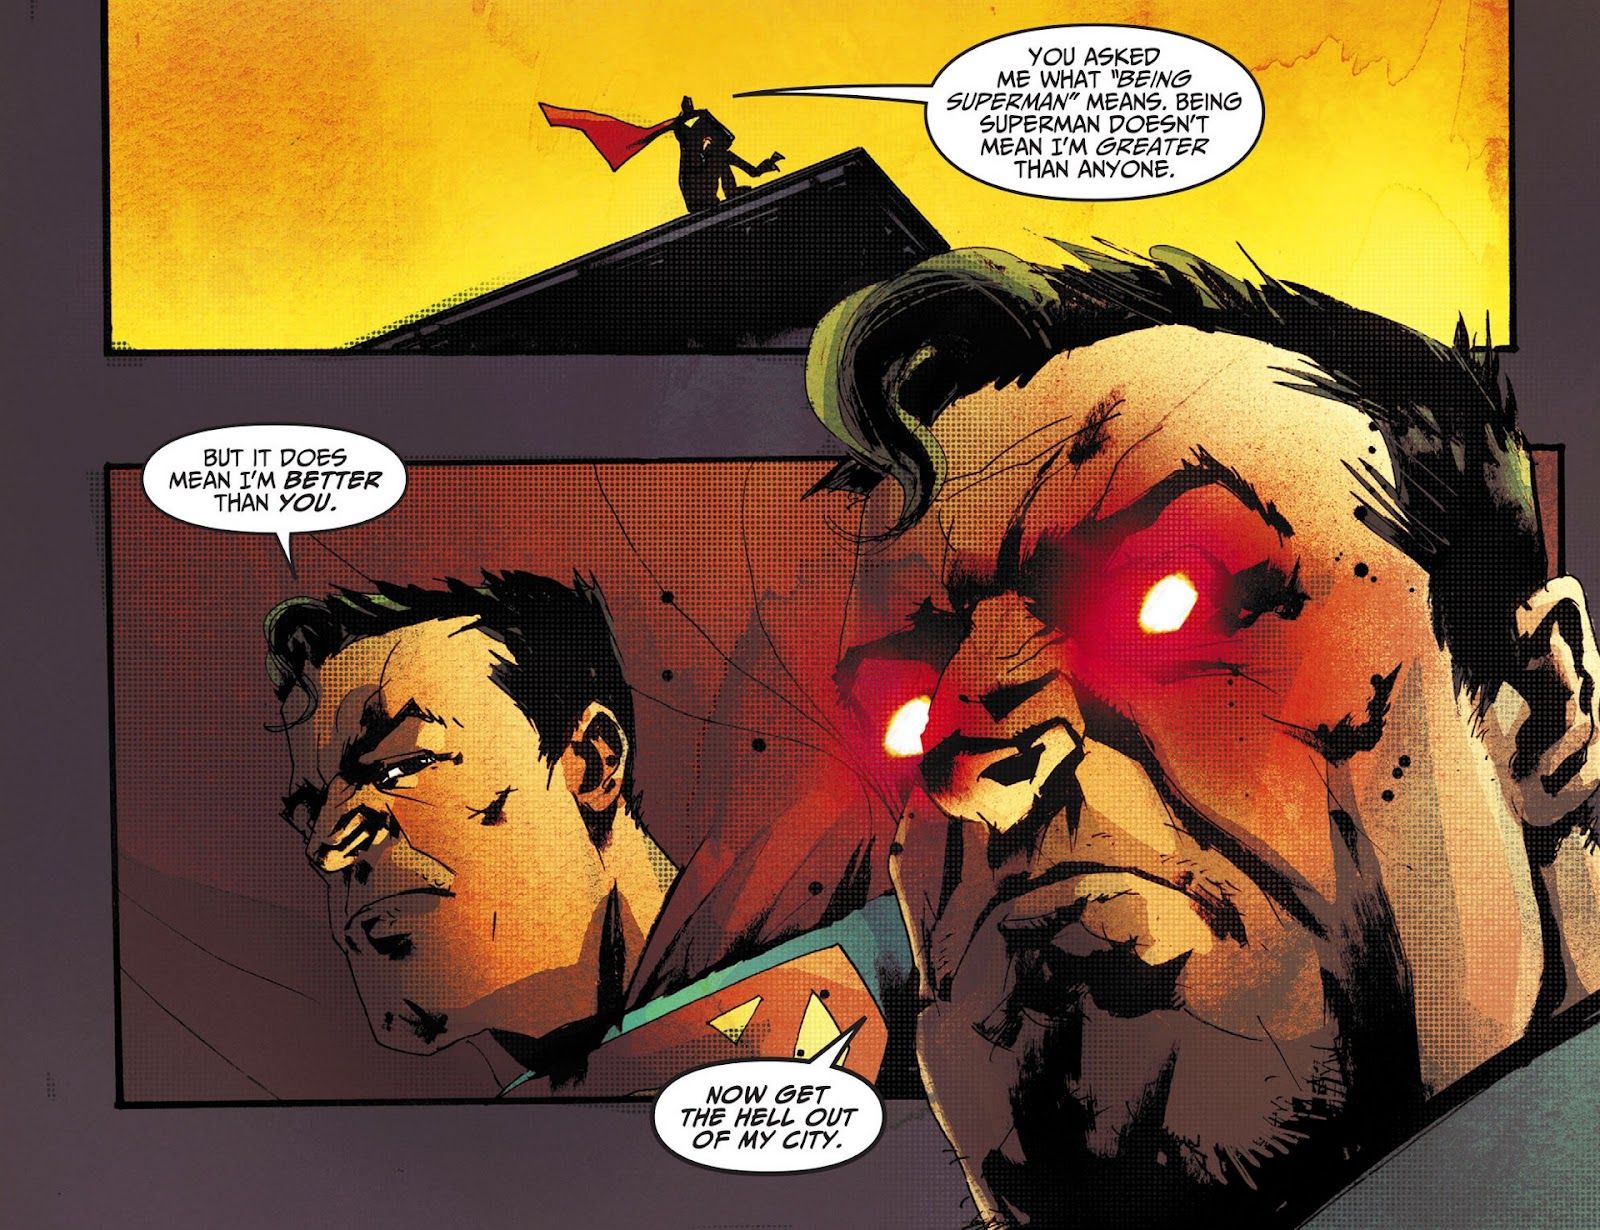 Superman with Red Eyes Tells Joker to Leave Metropolis